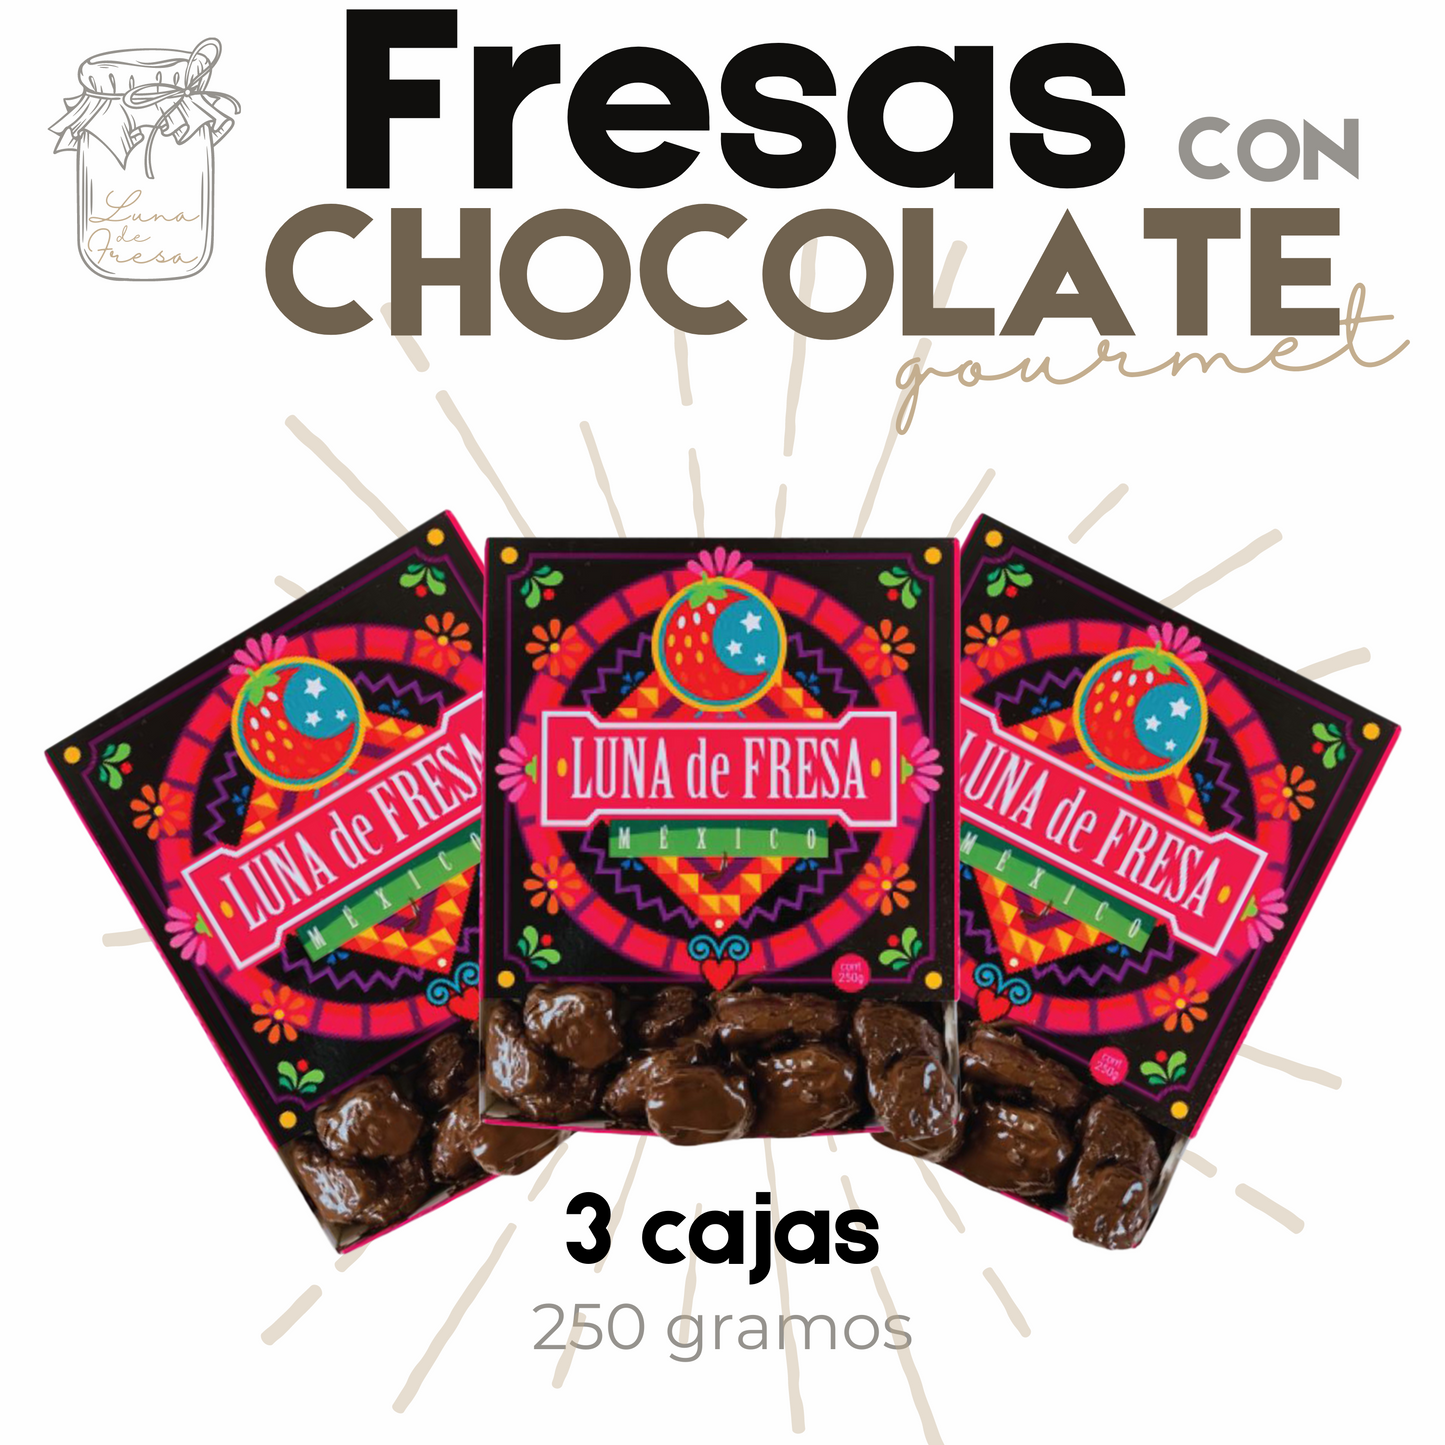 Fresas con chocolate | Fresas Cristalizadas | Gourmet | 750 | Mexpofood